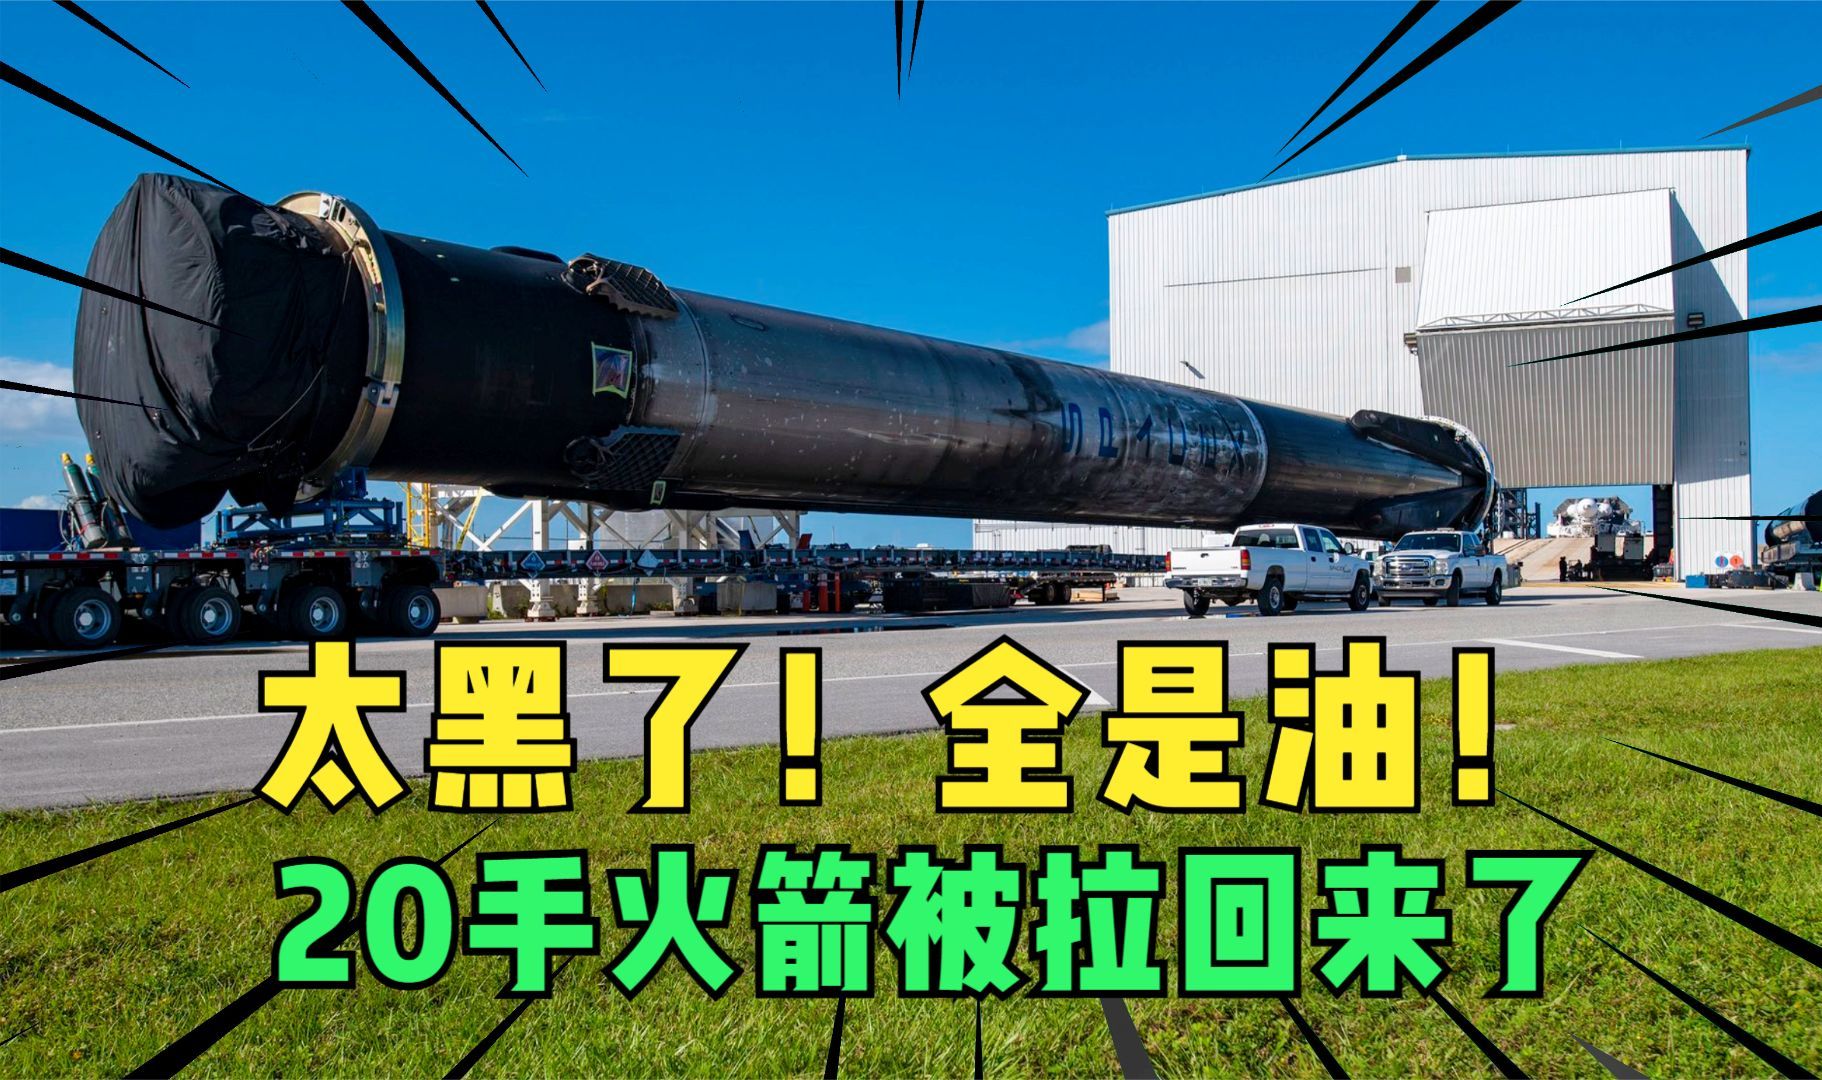 太黑了全油污！SpaceX拉回创记录的20手火箭！21飞指日可待！